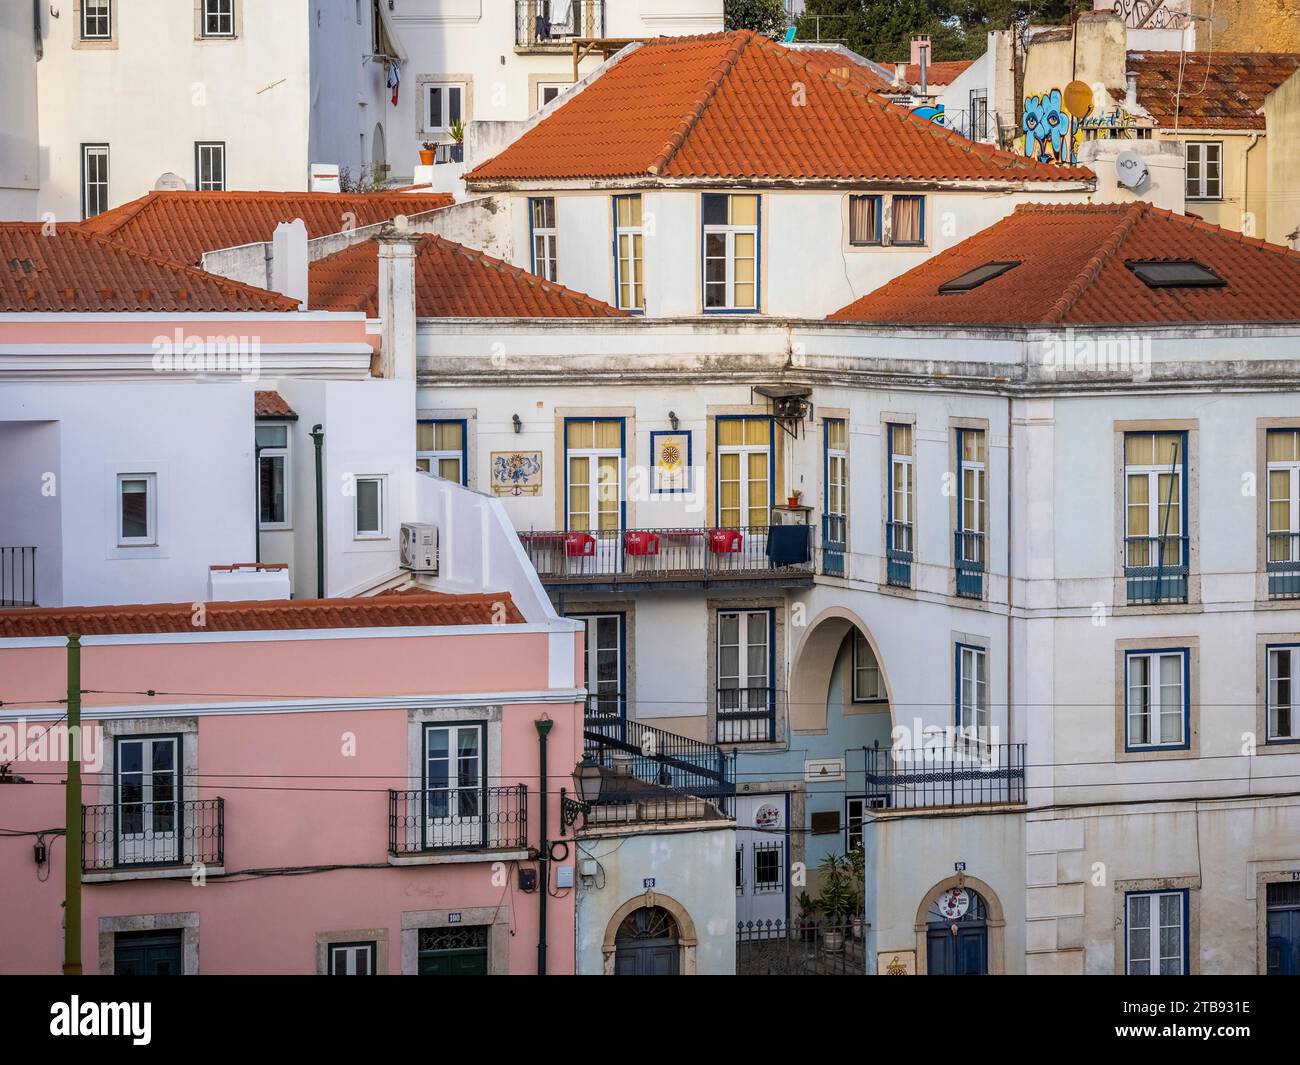 Vue depuis le point de vue Portas do sol dans la vieille ville Alfama district de Lisbonne Portugal Banque D'Images